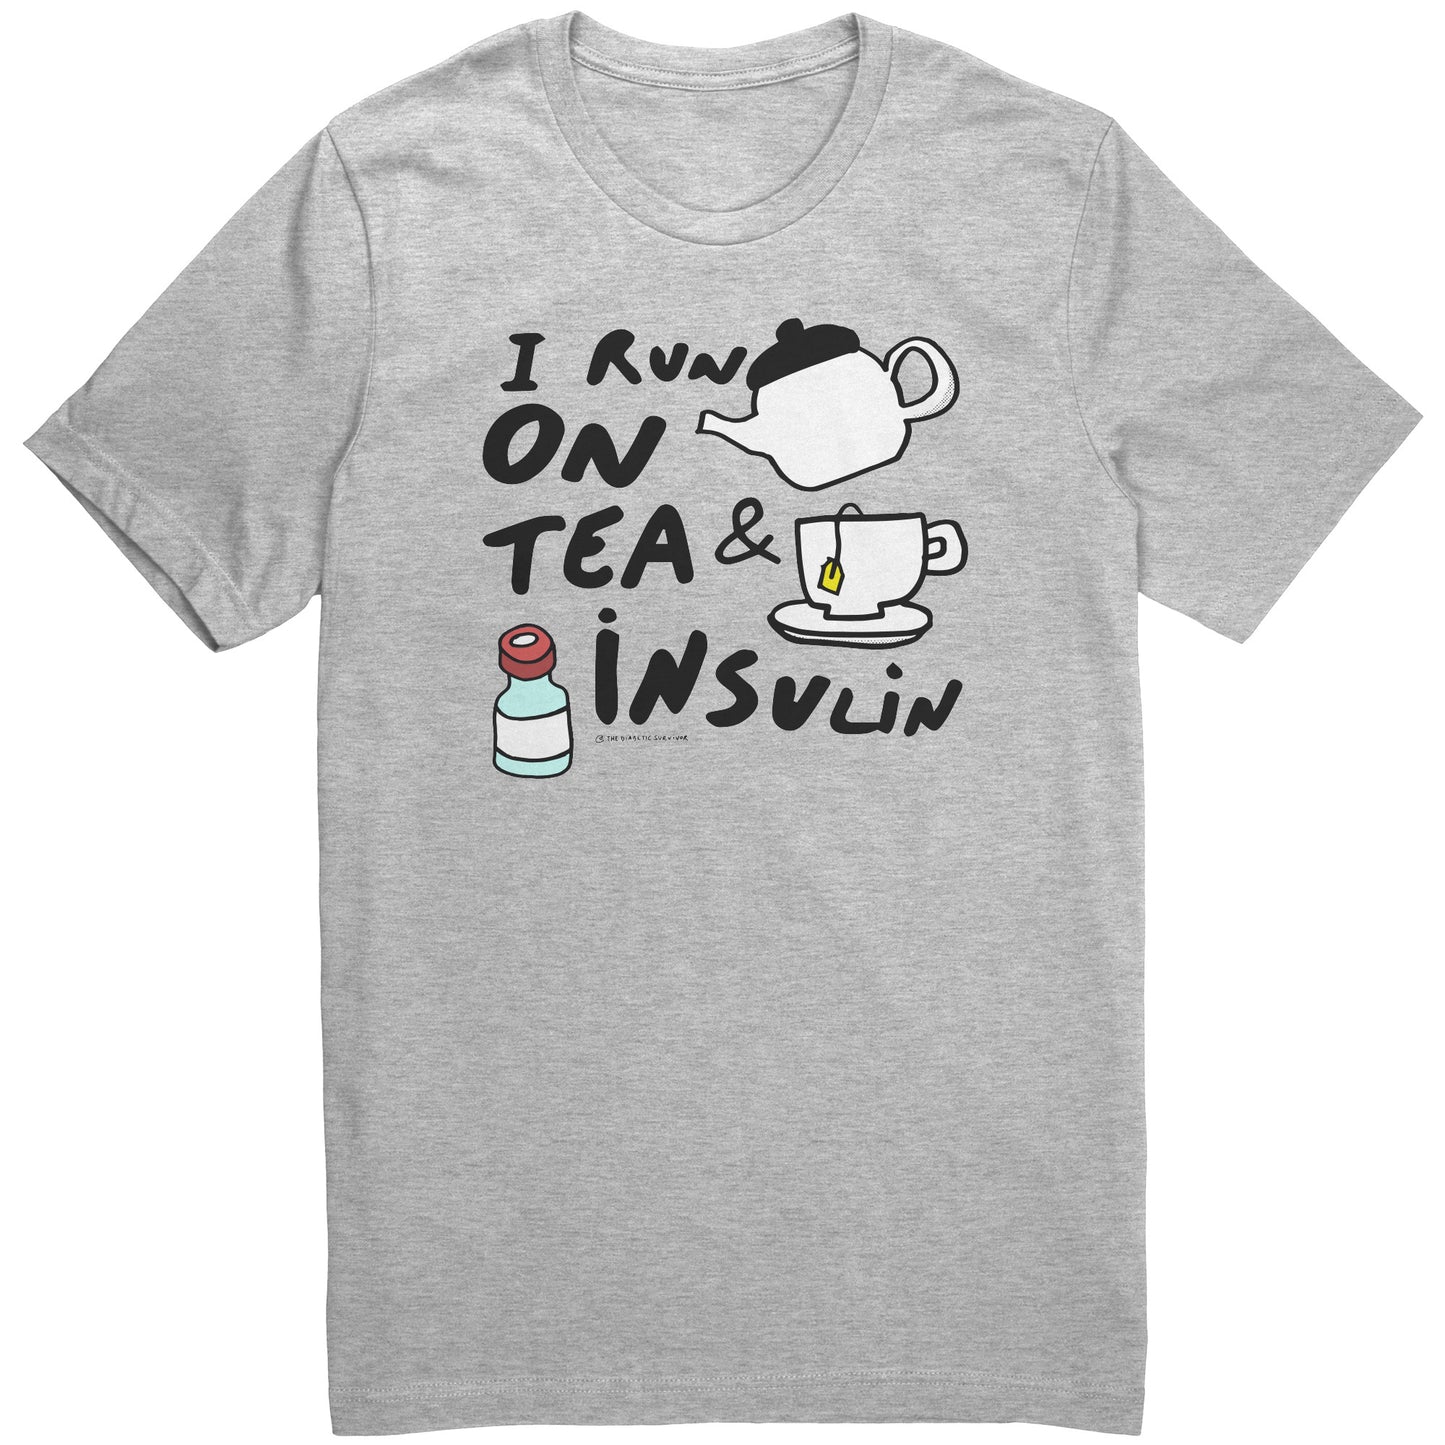 I run on tea & insulin